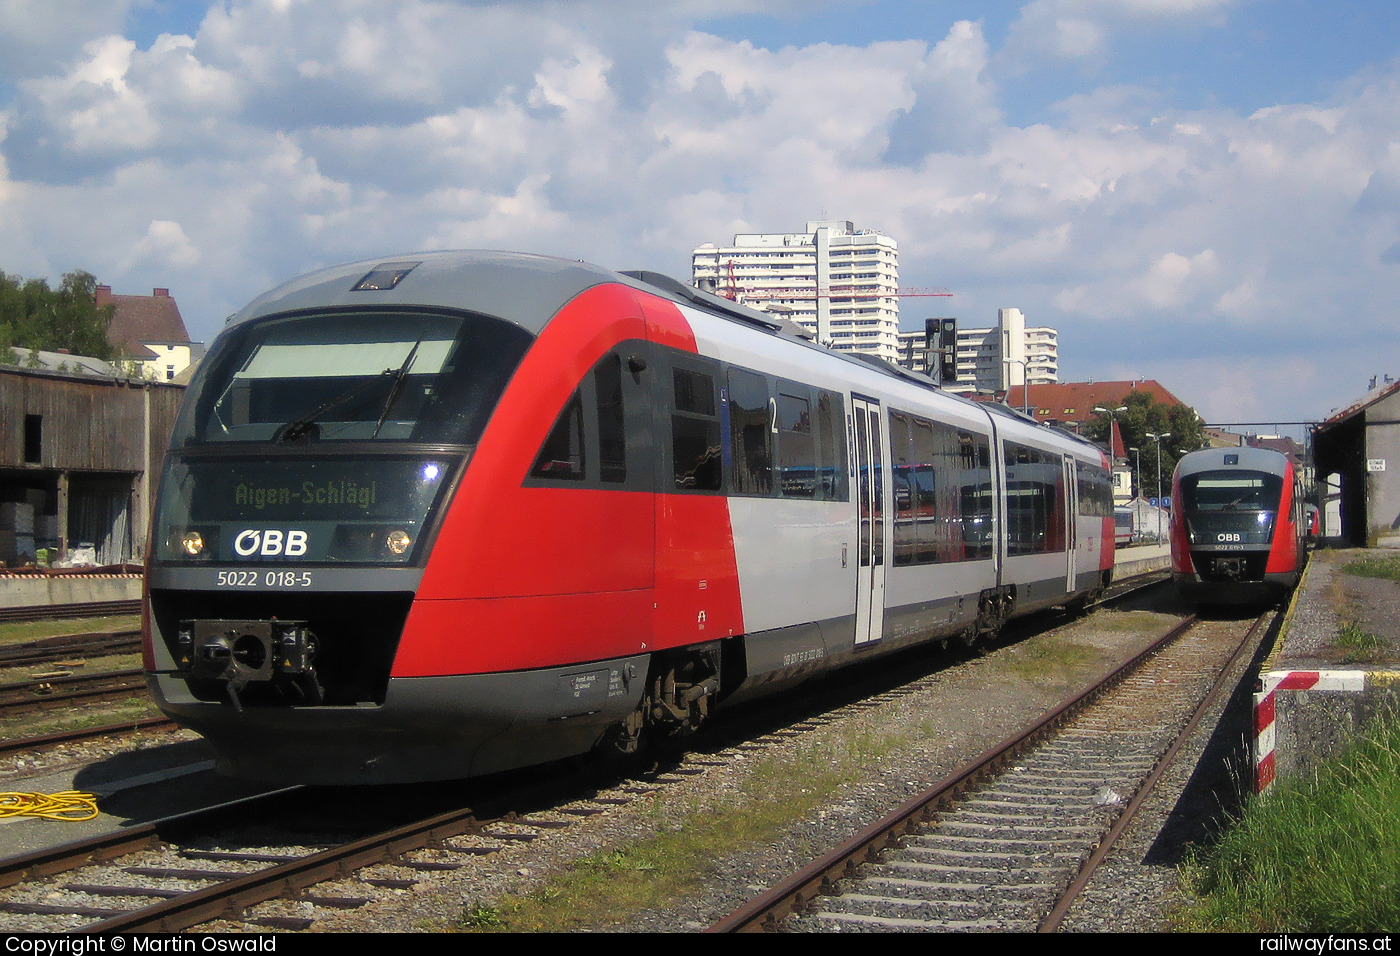 ÖBB 5022 018 in Linz Urfahr Mühlkreisbahn | Linz Urfahr - Aigen Schlägl Railwayfans